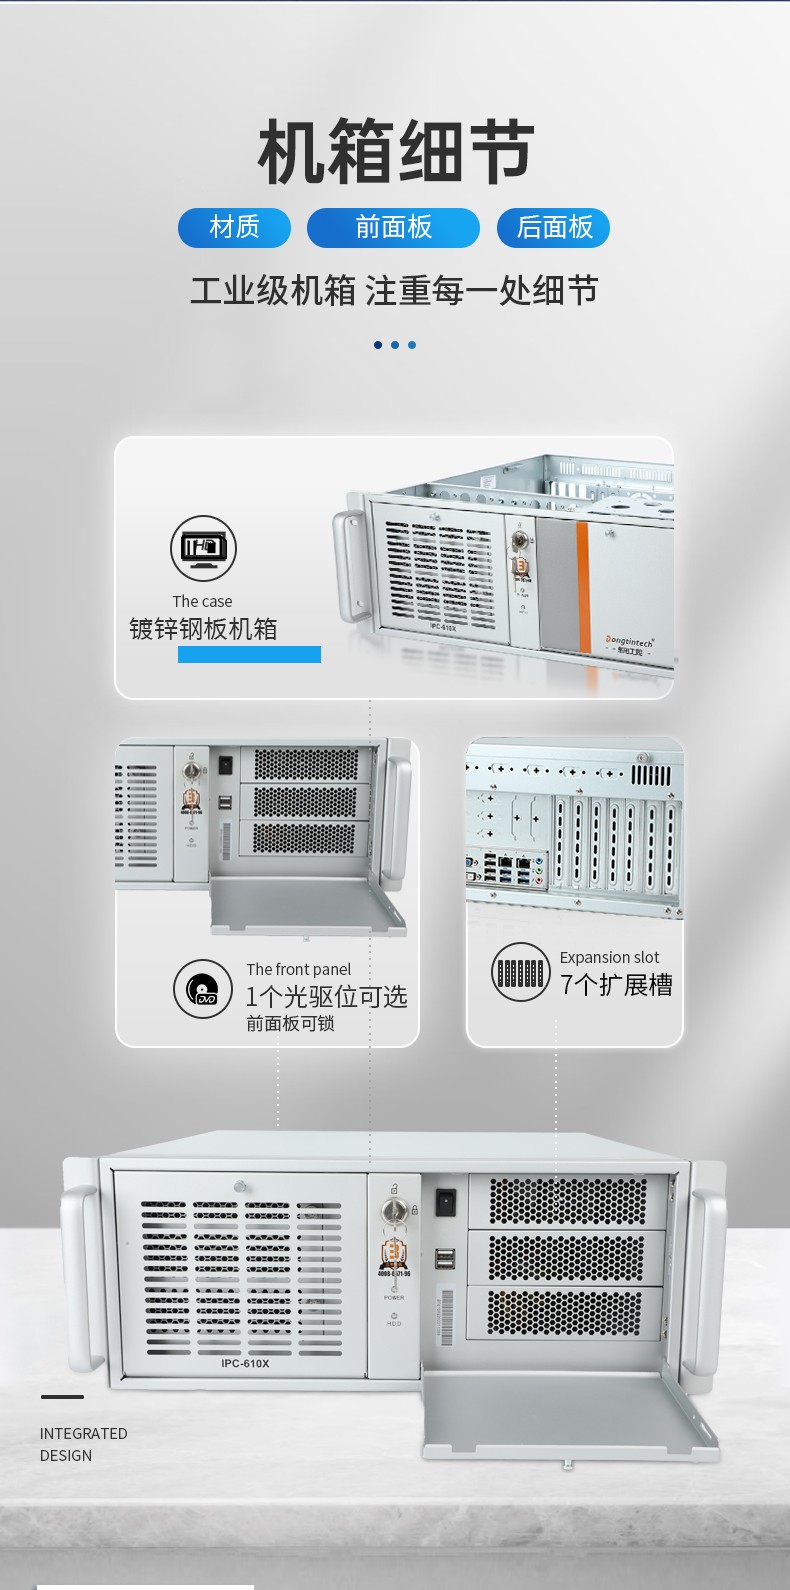 国产化工业电脑,兆芯CPU芯片,DT-610X-U6780MA.jpg